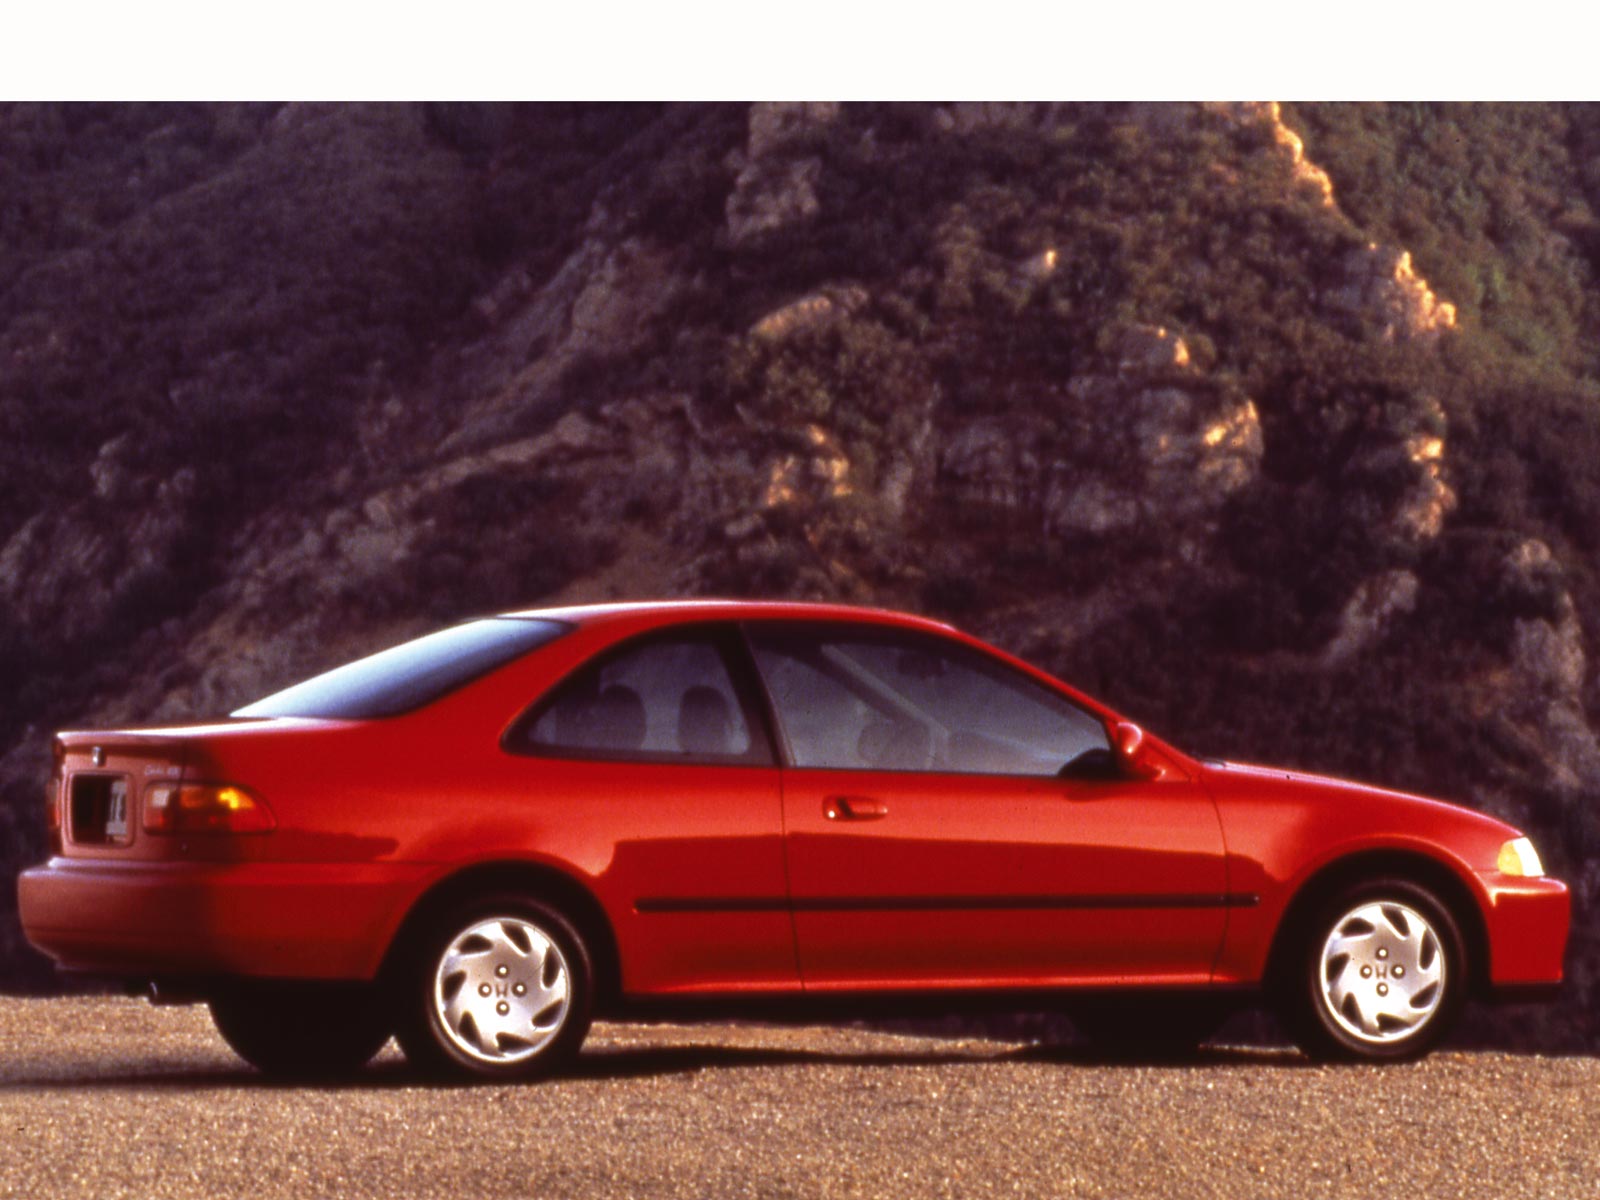 1991 Honda civic dx sedan body kit